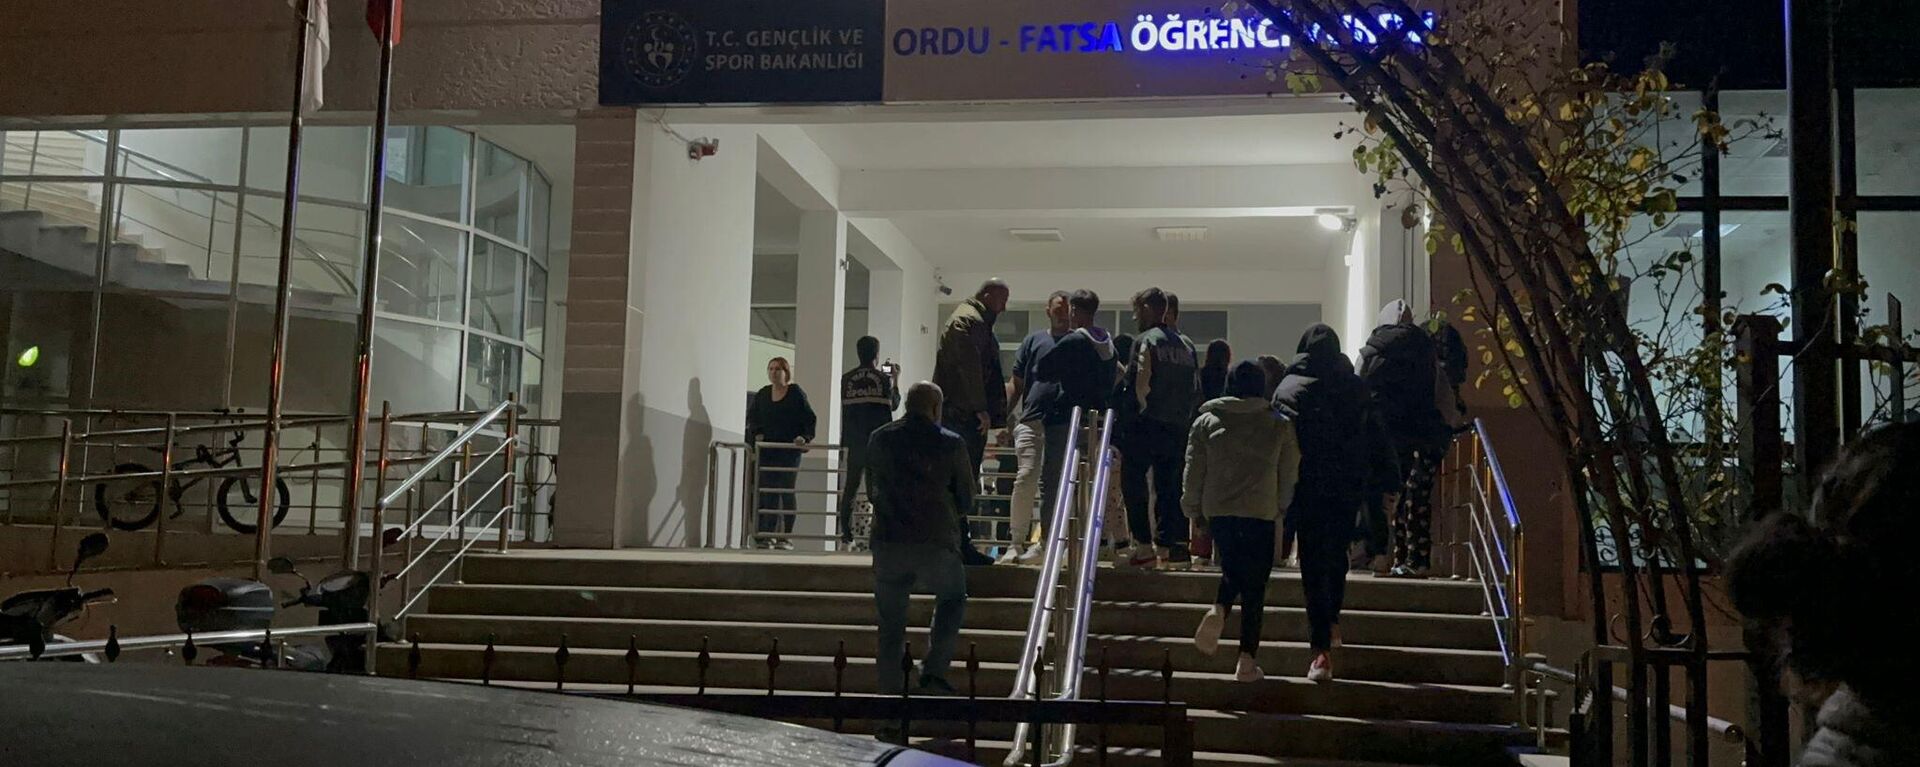 Ordu'nun Fatsa ilçesinde üniversite öğrencilerinin kaldığı KYK yurdunda asansör halatları koptu, 4 öğrenci tedbir amaçlı hastaneye kaldırıldı. - Sputnik Türkiye, 1920, 31.10.2023